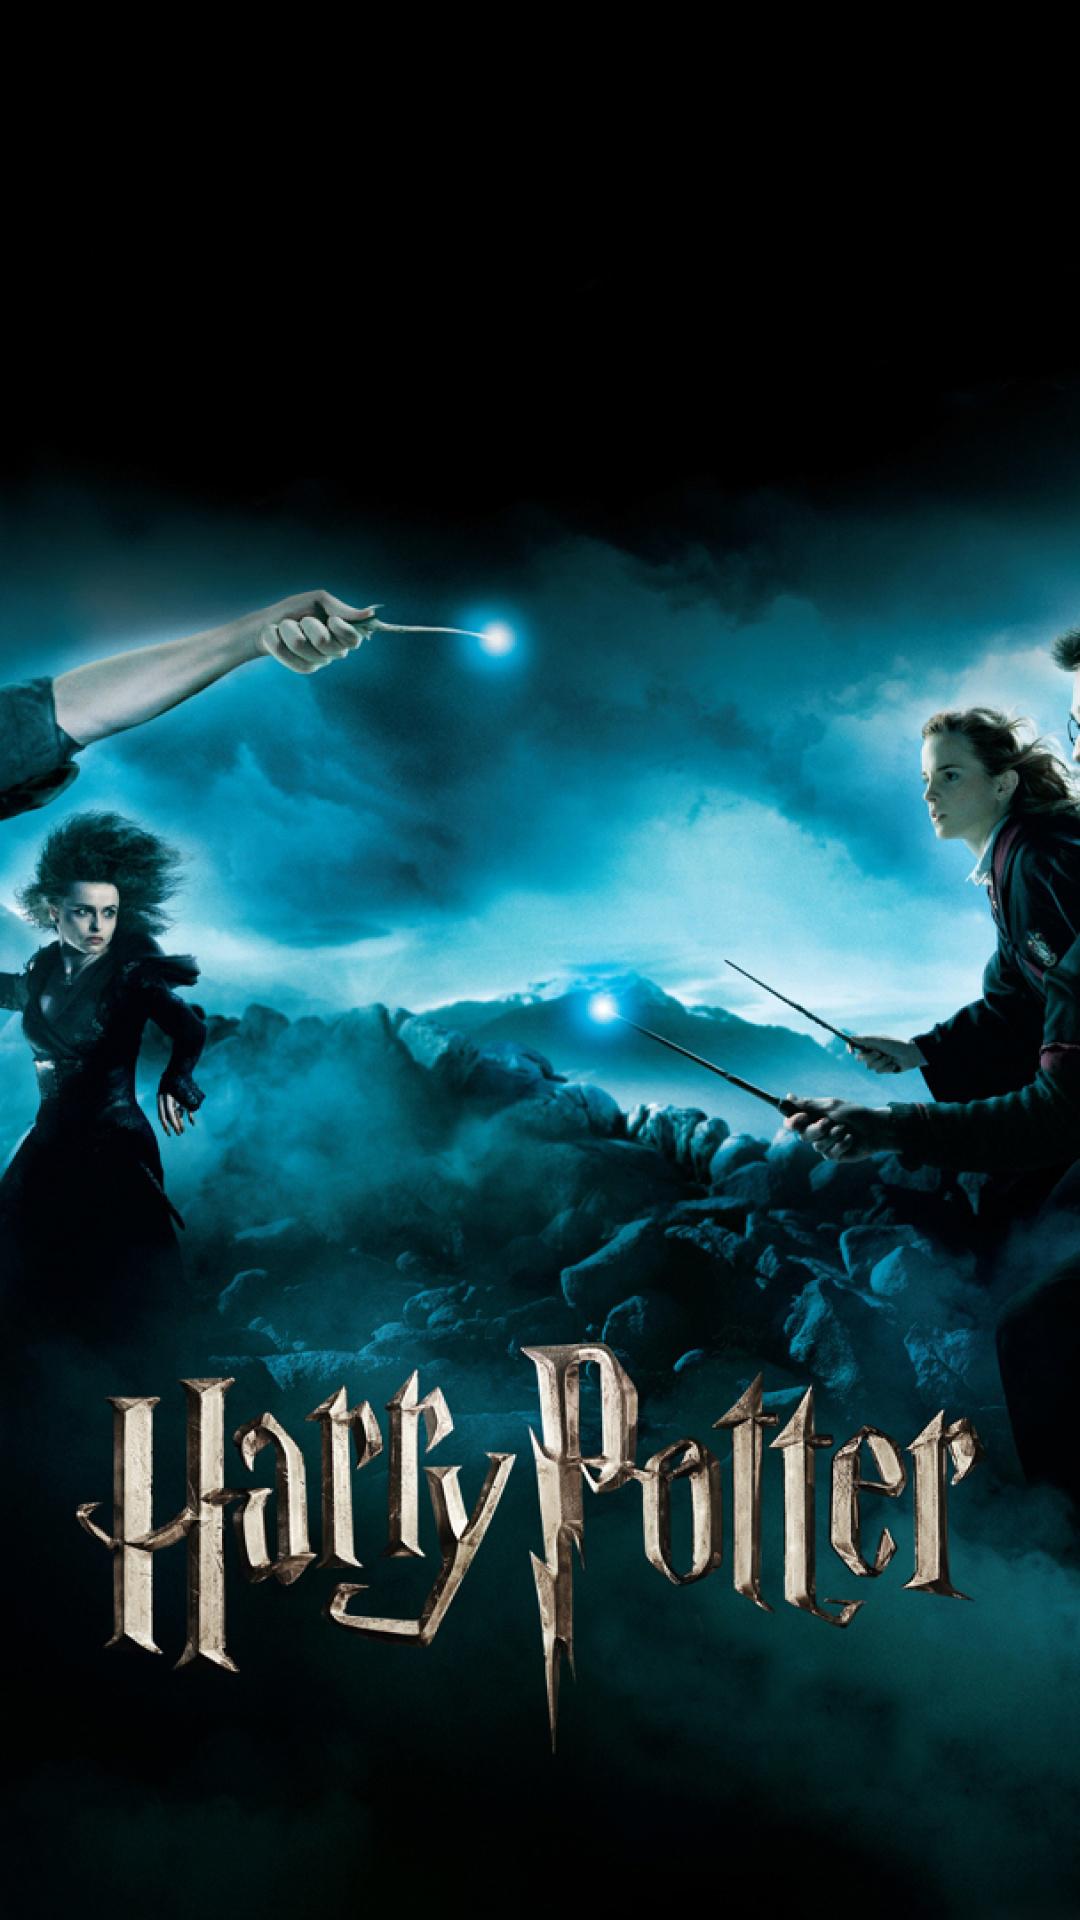 Chia Sẻ 59 Hình Nền Điện Thoại Harry Potter Chất Lượng Cao Cực Ngầu  Top  10 Hà Nội